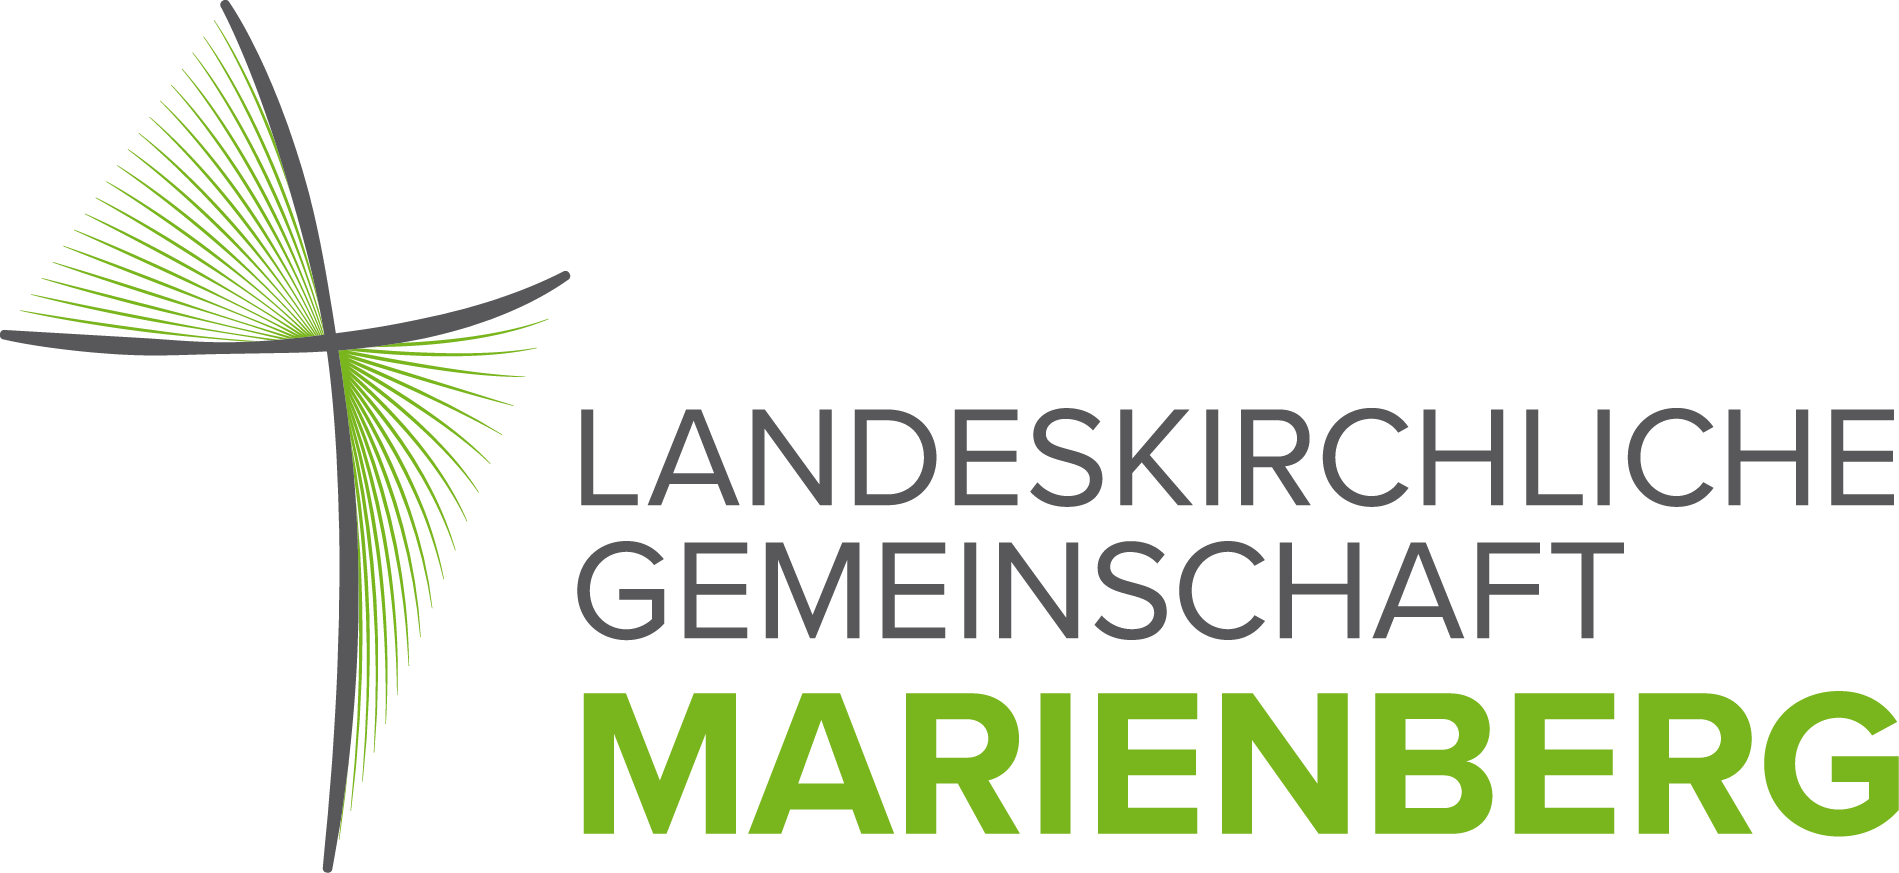 Landeskirchliche Gemeinschaft Marienberg